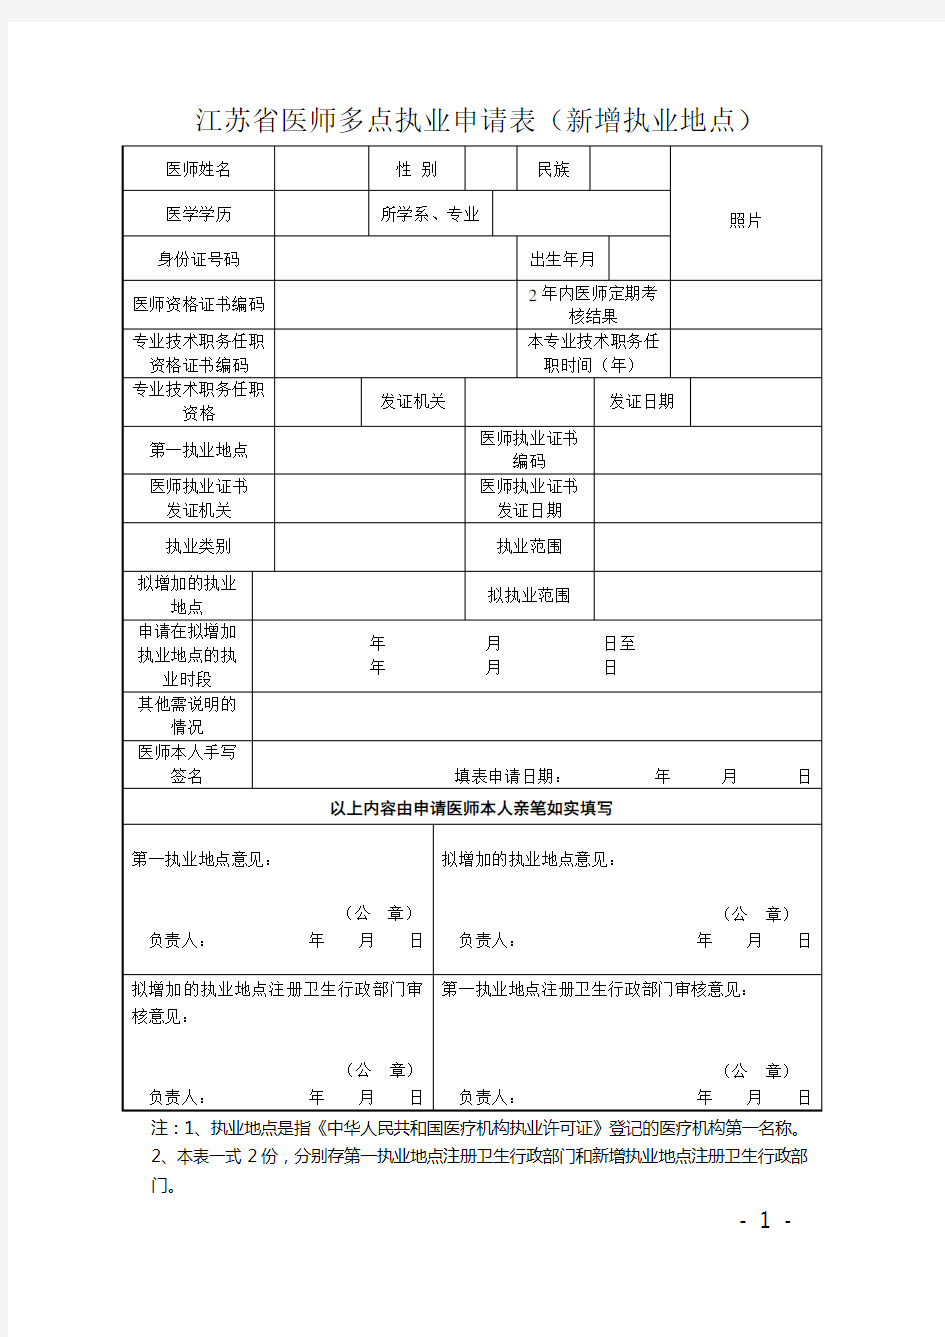 江苏省医师多点执业申请表(新增执业地点)